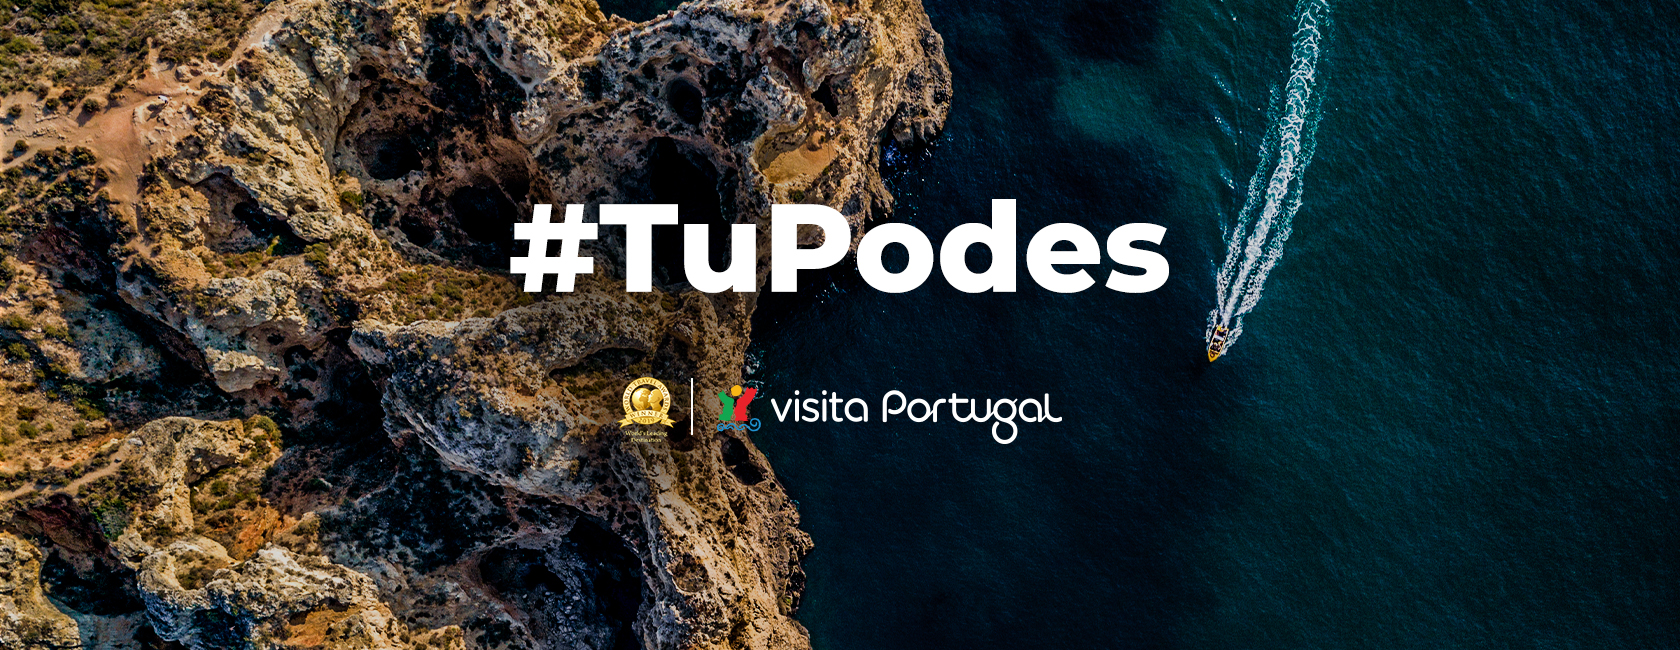 #TuPodes Visita Portugal